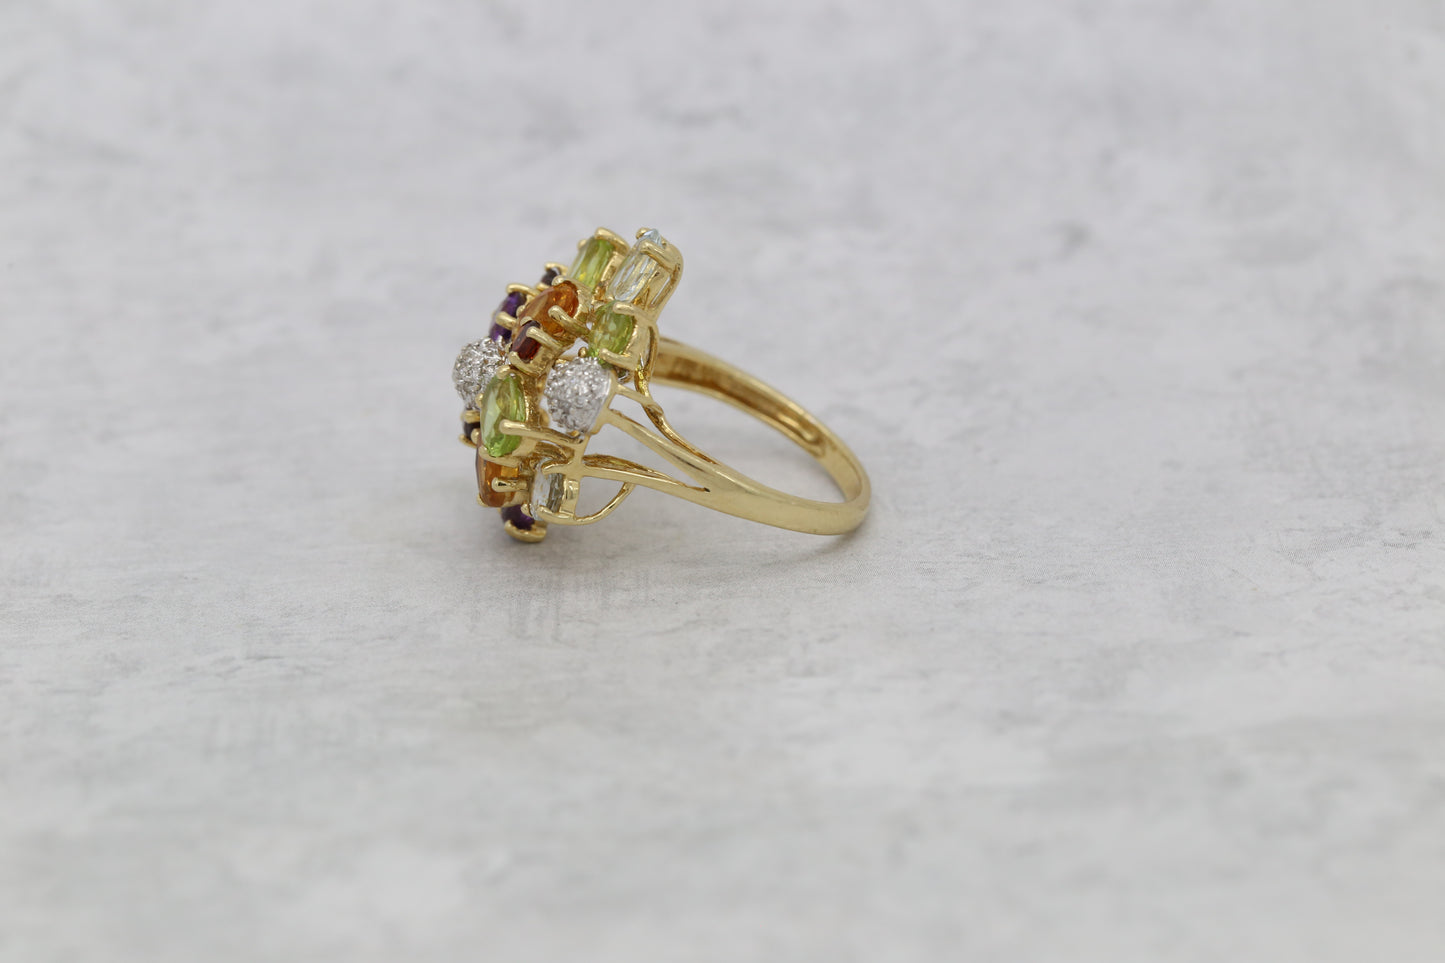 Vintage 14k Yellow Gold Multi-Gemstone Ring, Size 7 - 5.7g